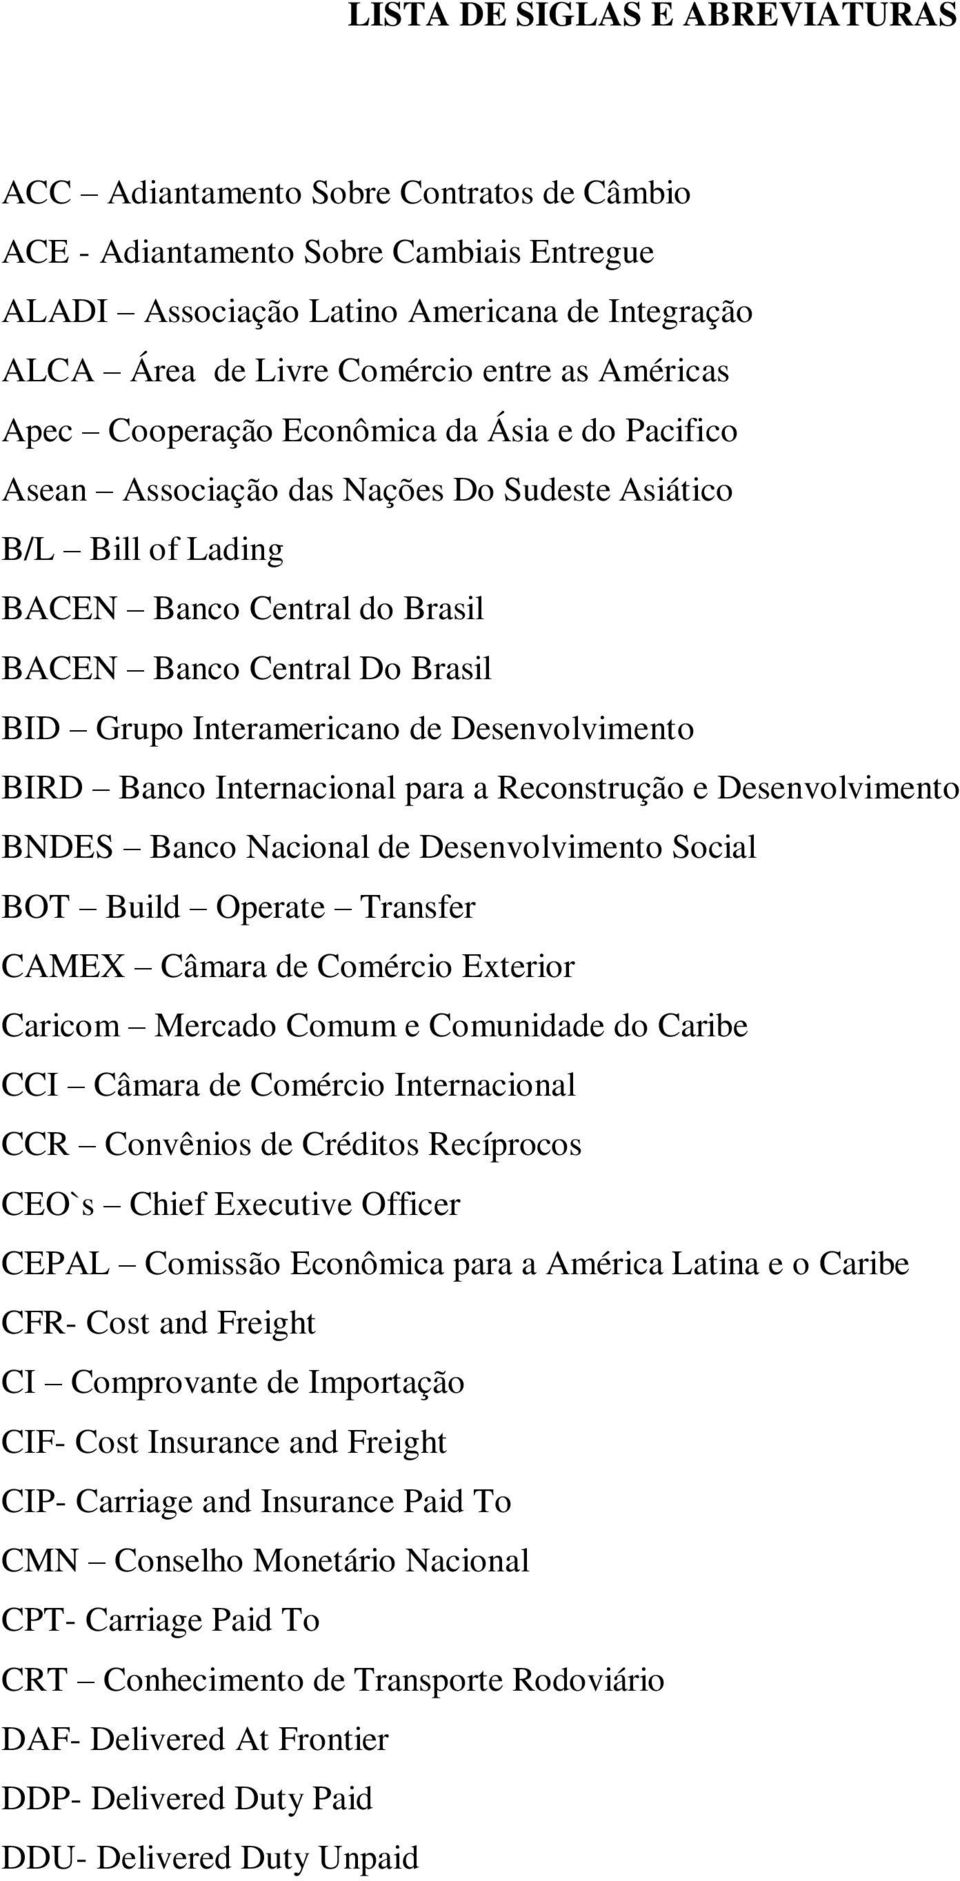 Interamericano de Desenvolvimento BIRD Banco Internacional para a Reconstrução e Desenvolvimento BNDES Banco Nacional de Desenvolvimento Social BOT Build Operate Transfer CAMEX Câmara de Comércio